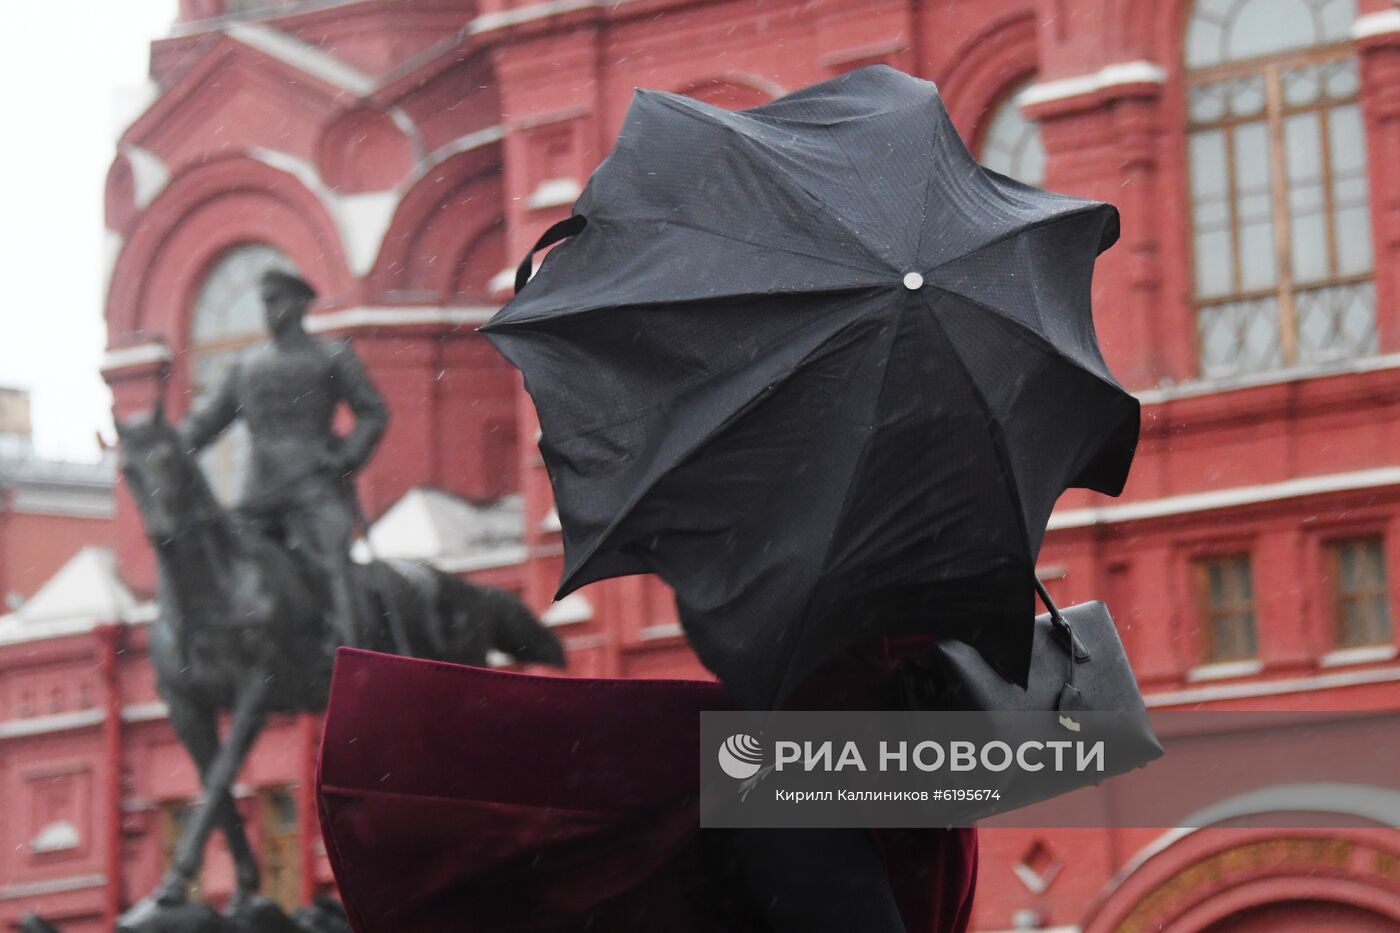 Ветреная погода в Москве